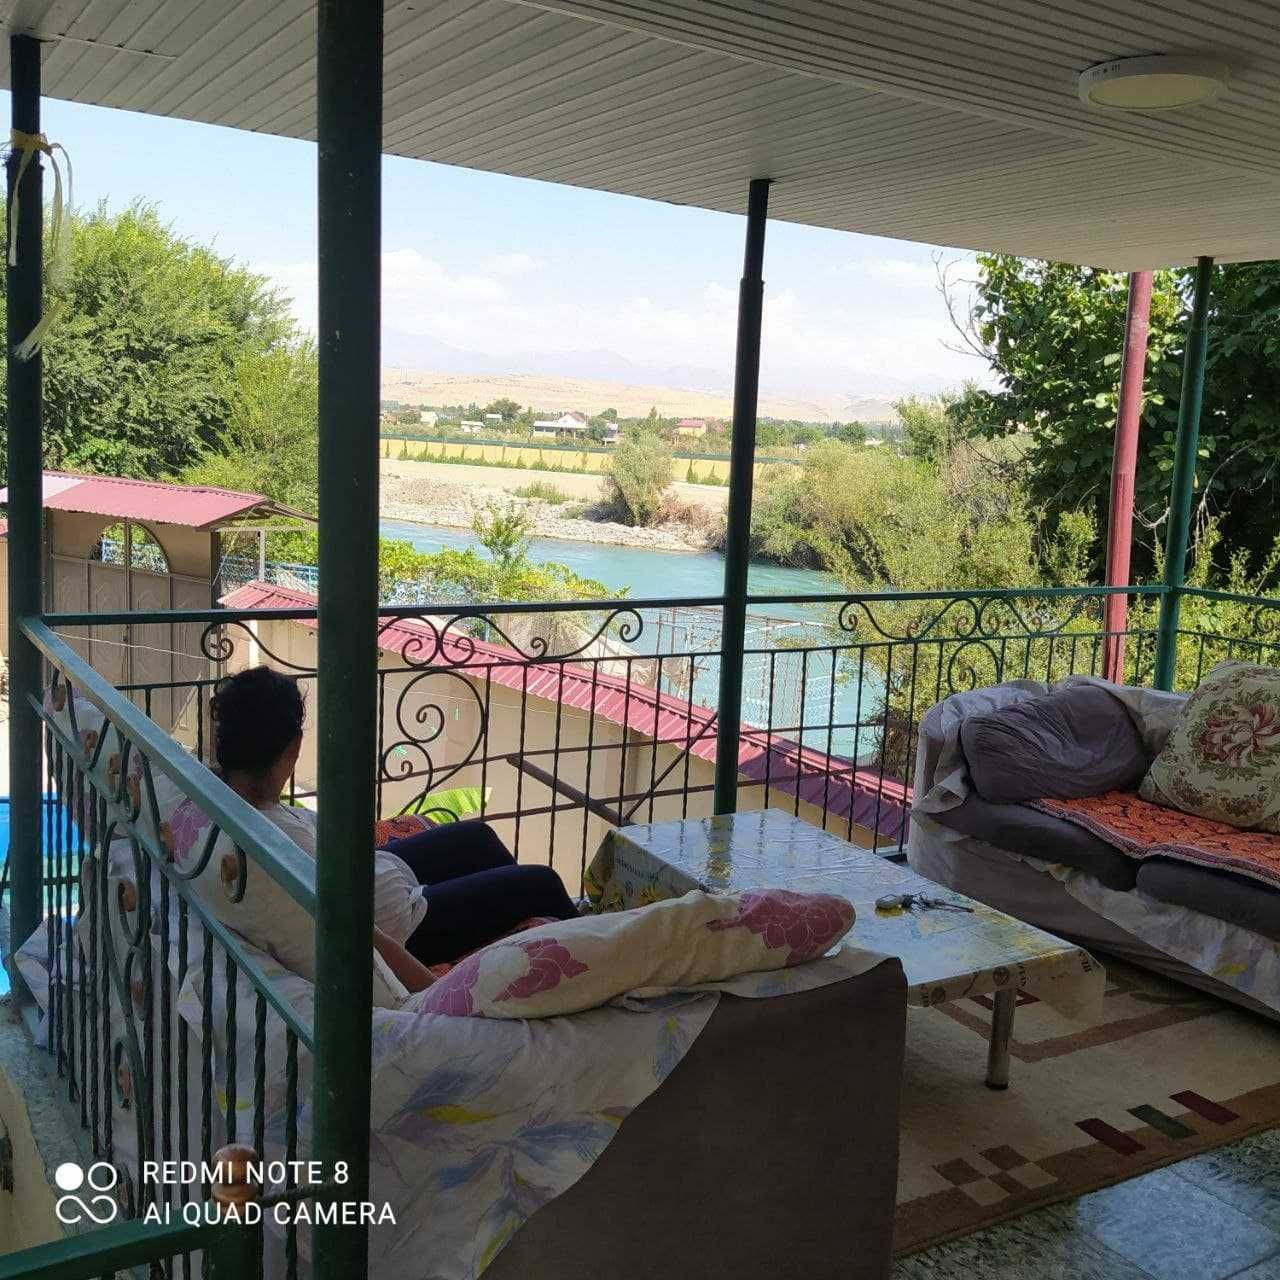 Загородный дом, дача продам, обменяю на участок в Ташкенте или области